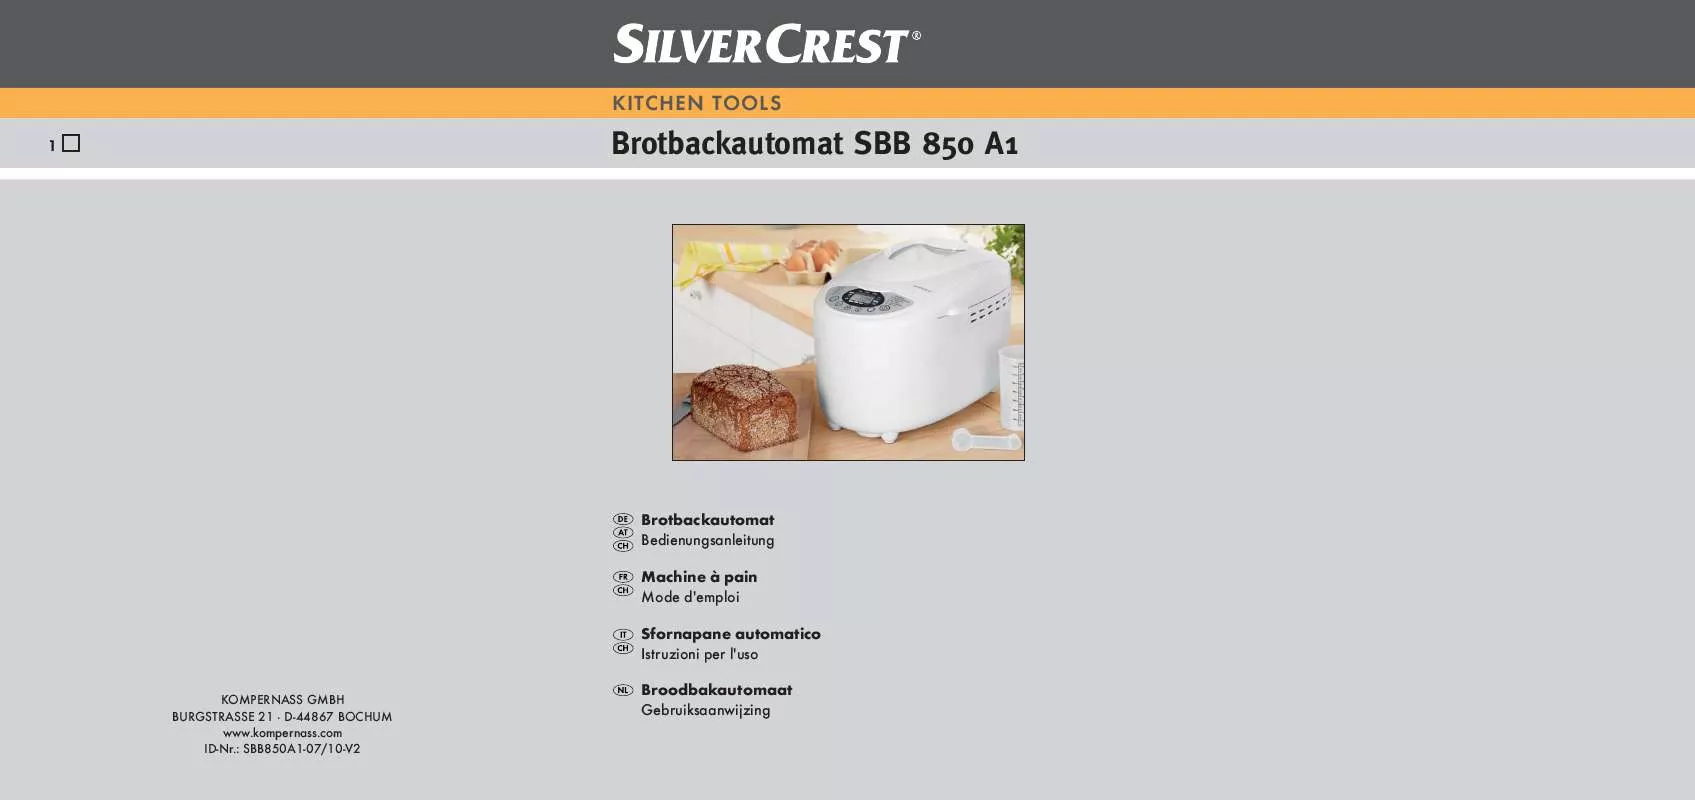 Mode d'emploi SILVERCREST SBB 850 A1 BREAD MAKER